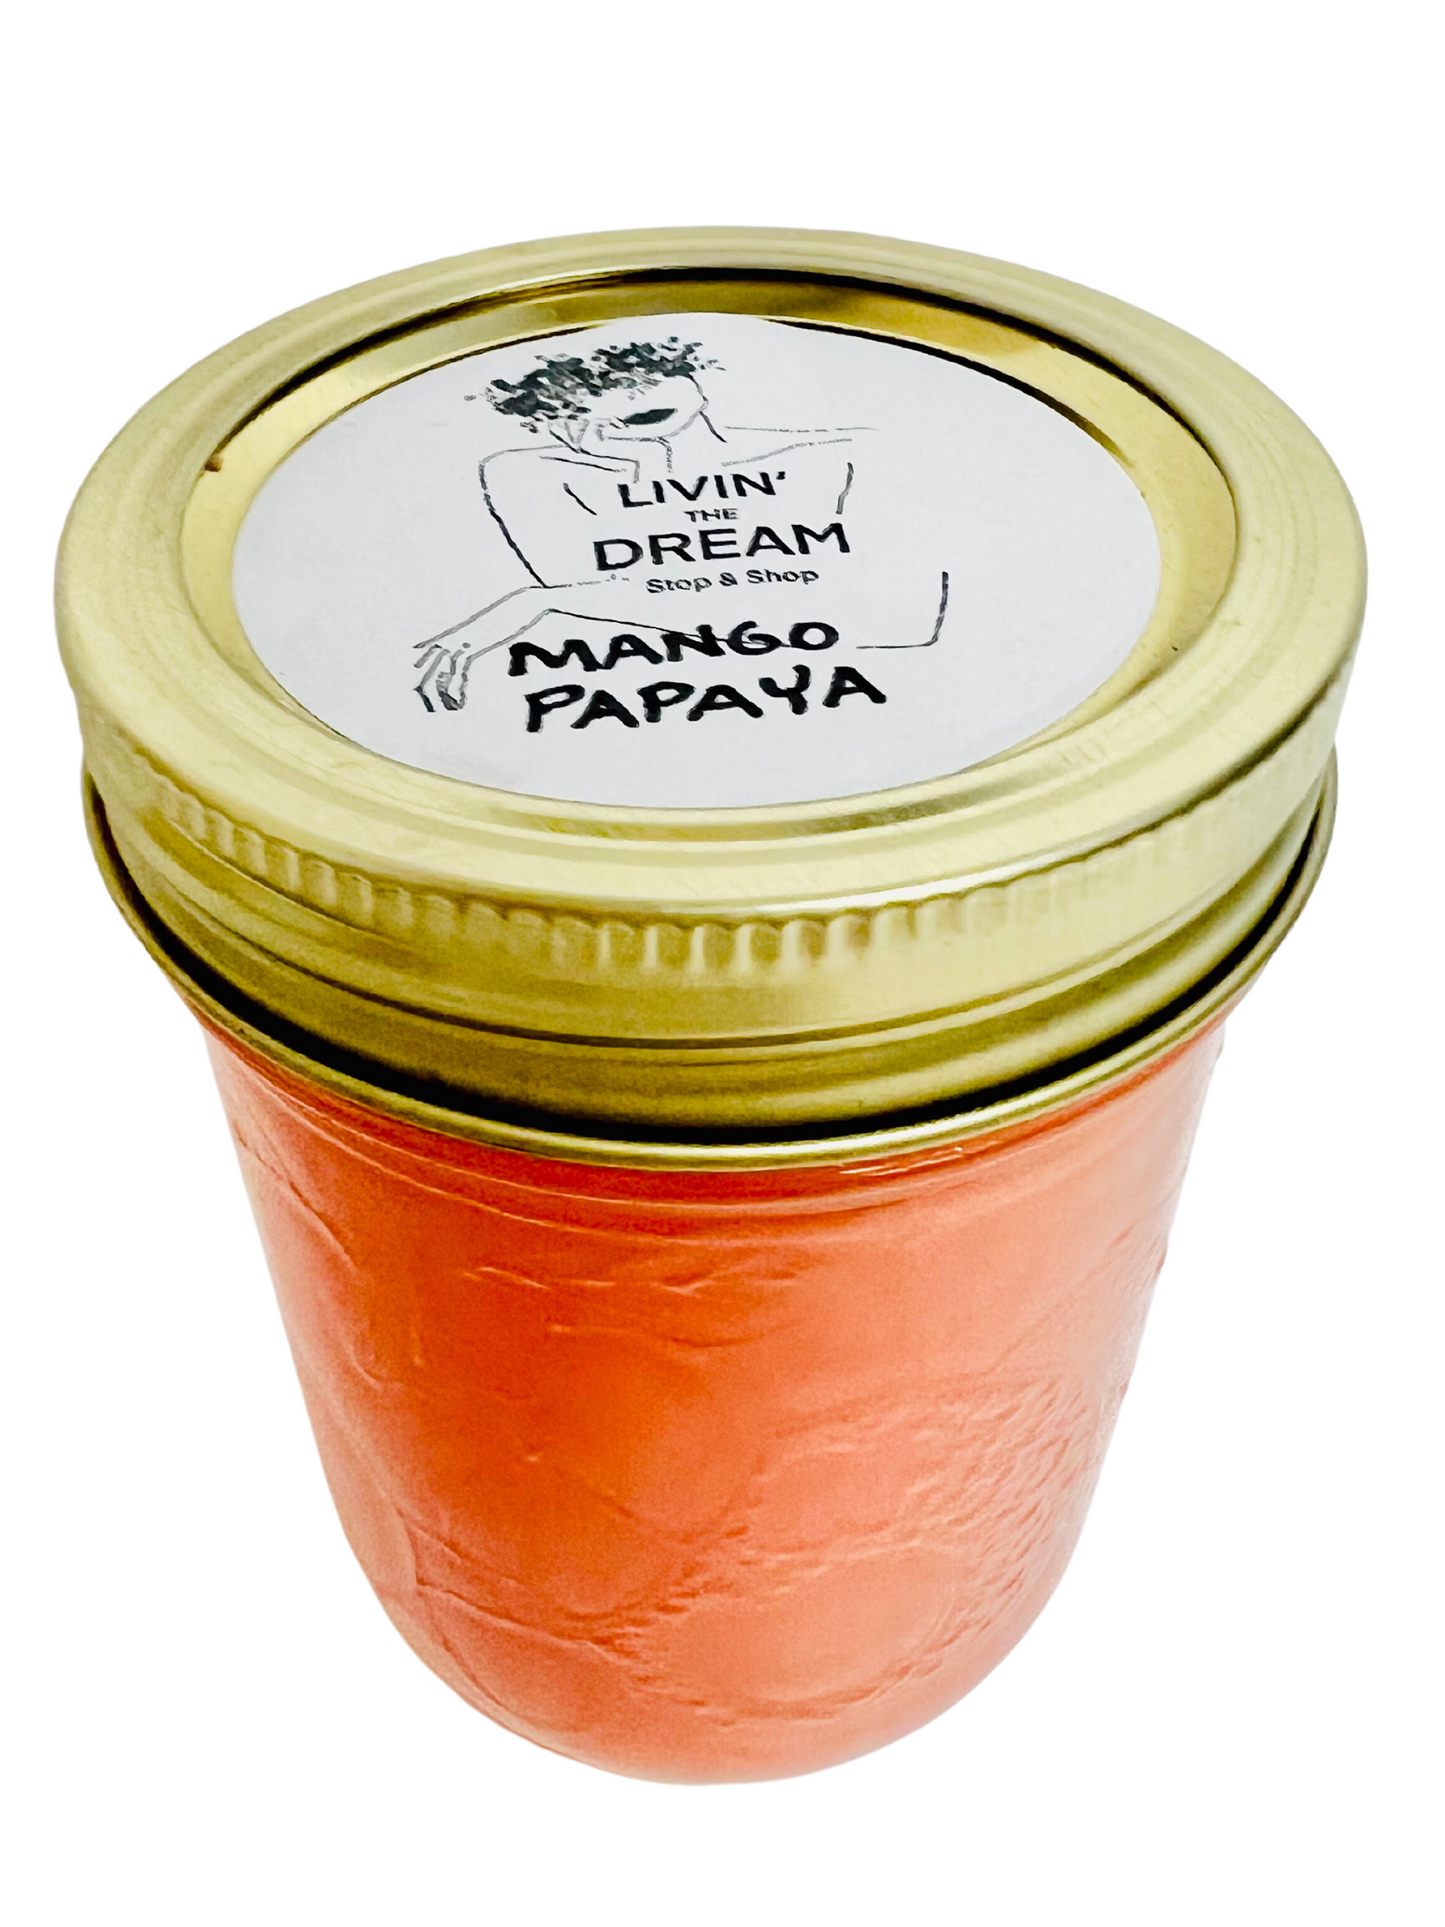 Mango Papaya Candle